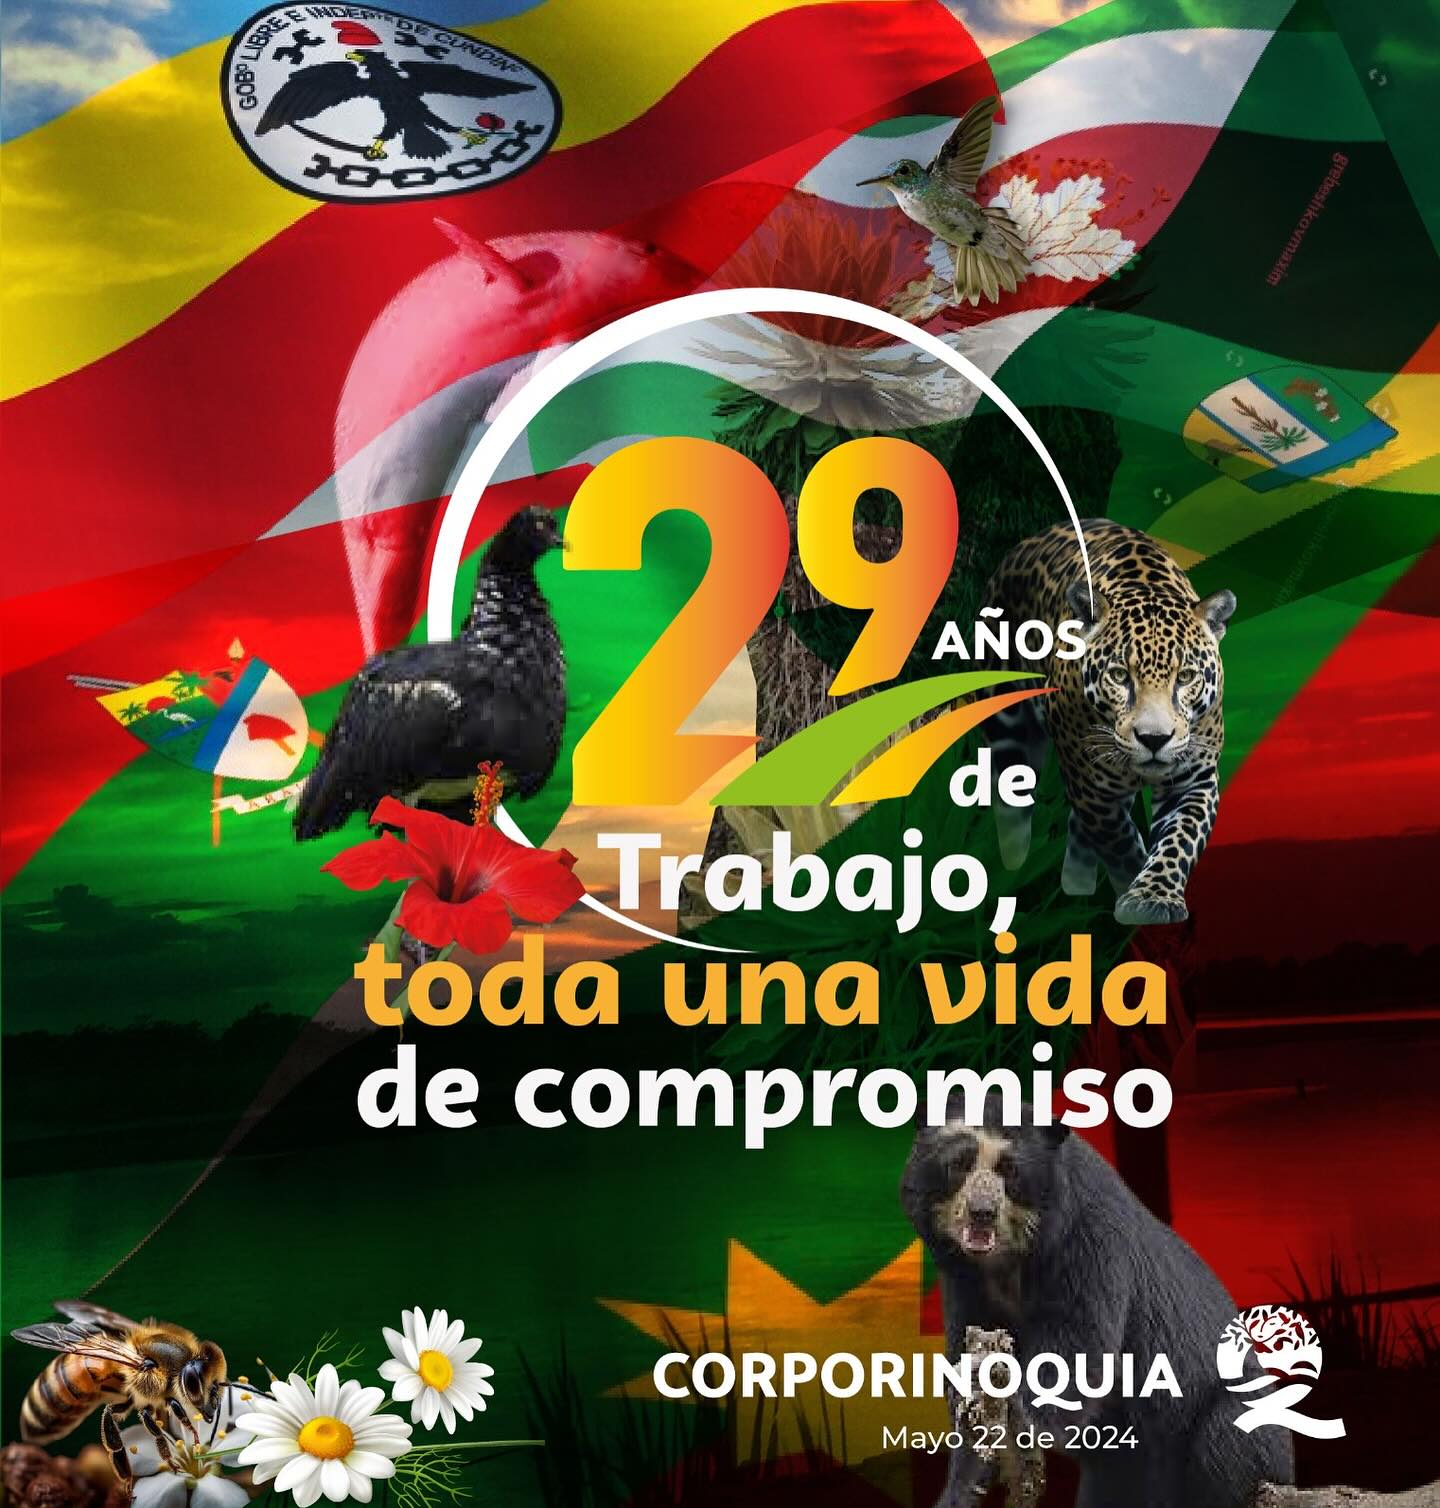 Corporinoquia Celebra 29 Años de Protección de los Recursos Naturales de la Orinoquia